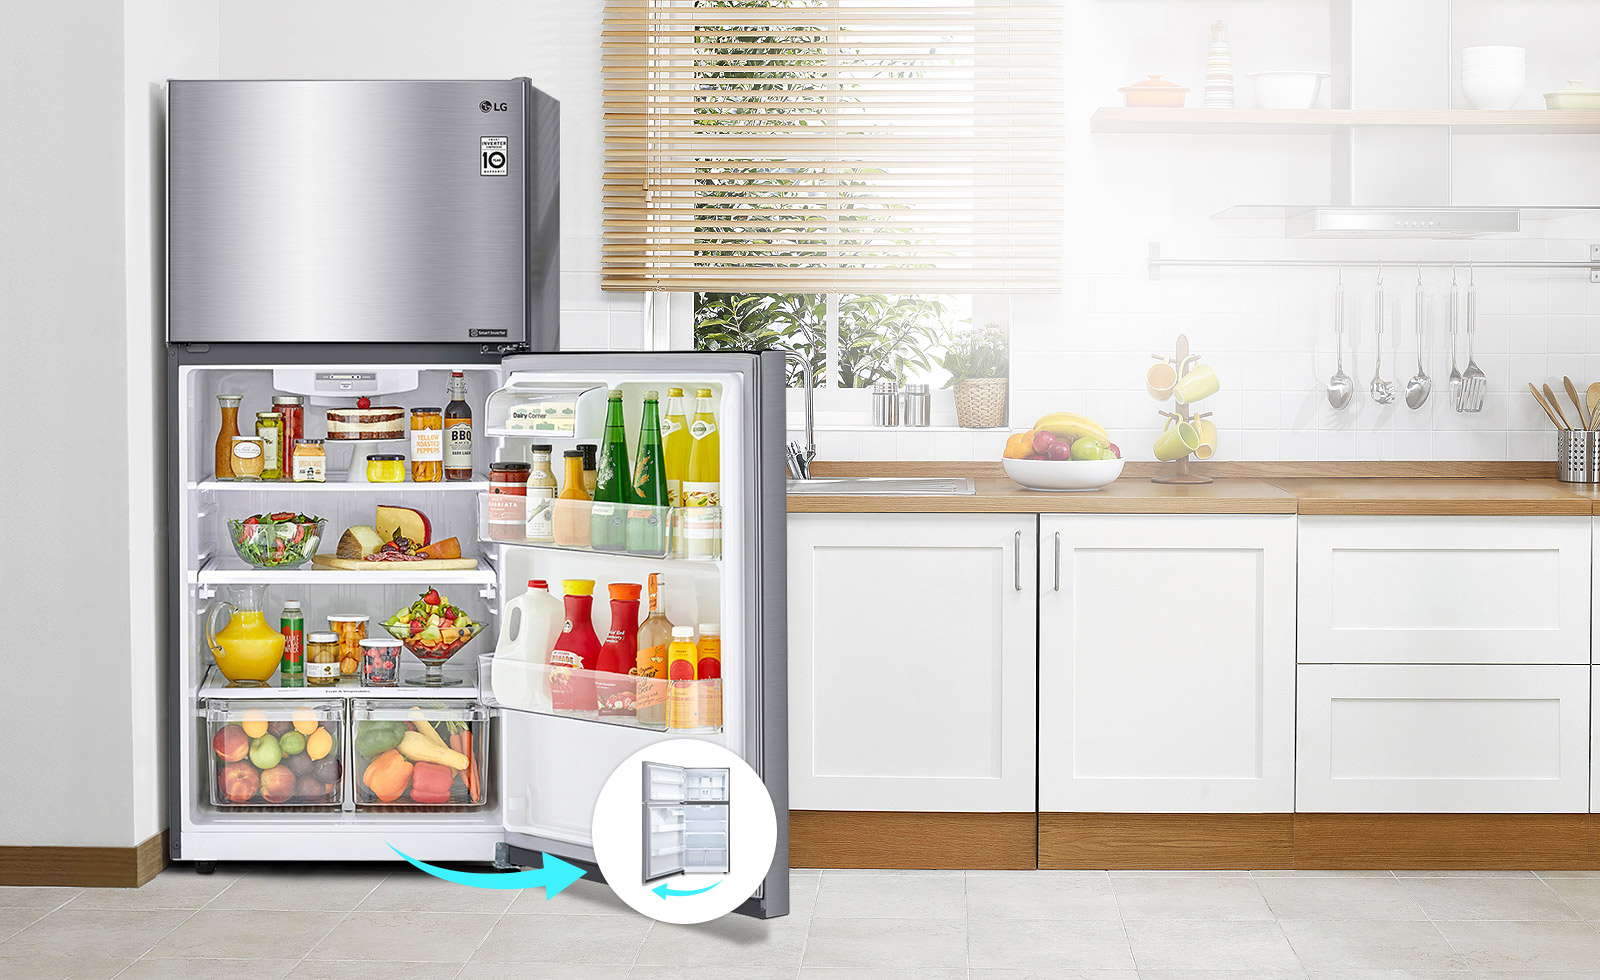 El refrigerador está en una cocina con una puerta que se abre a la derecha. Al lado del refrigerador hay un pequeño círculo con una imagen del mismo refrigerador con una puerta de apertura izquierda para indicar una puerta reversible.